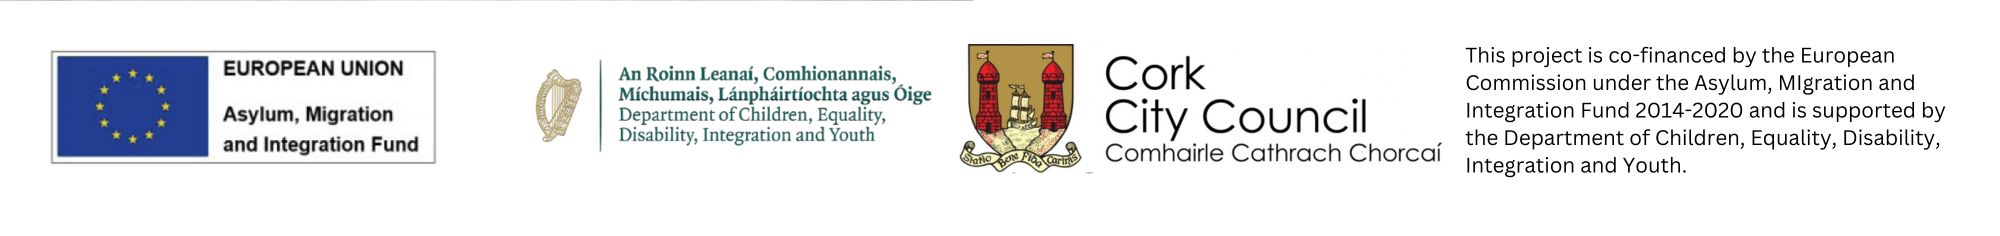 AMIF, DCEDIY, Cork City Council logos